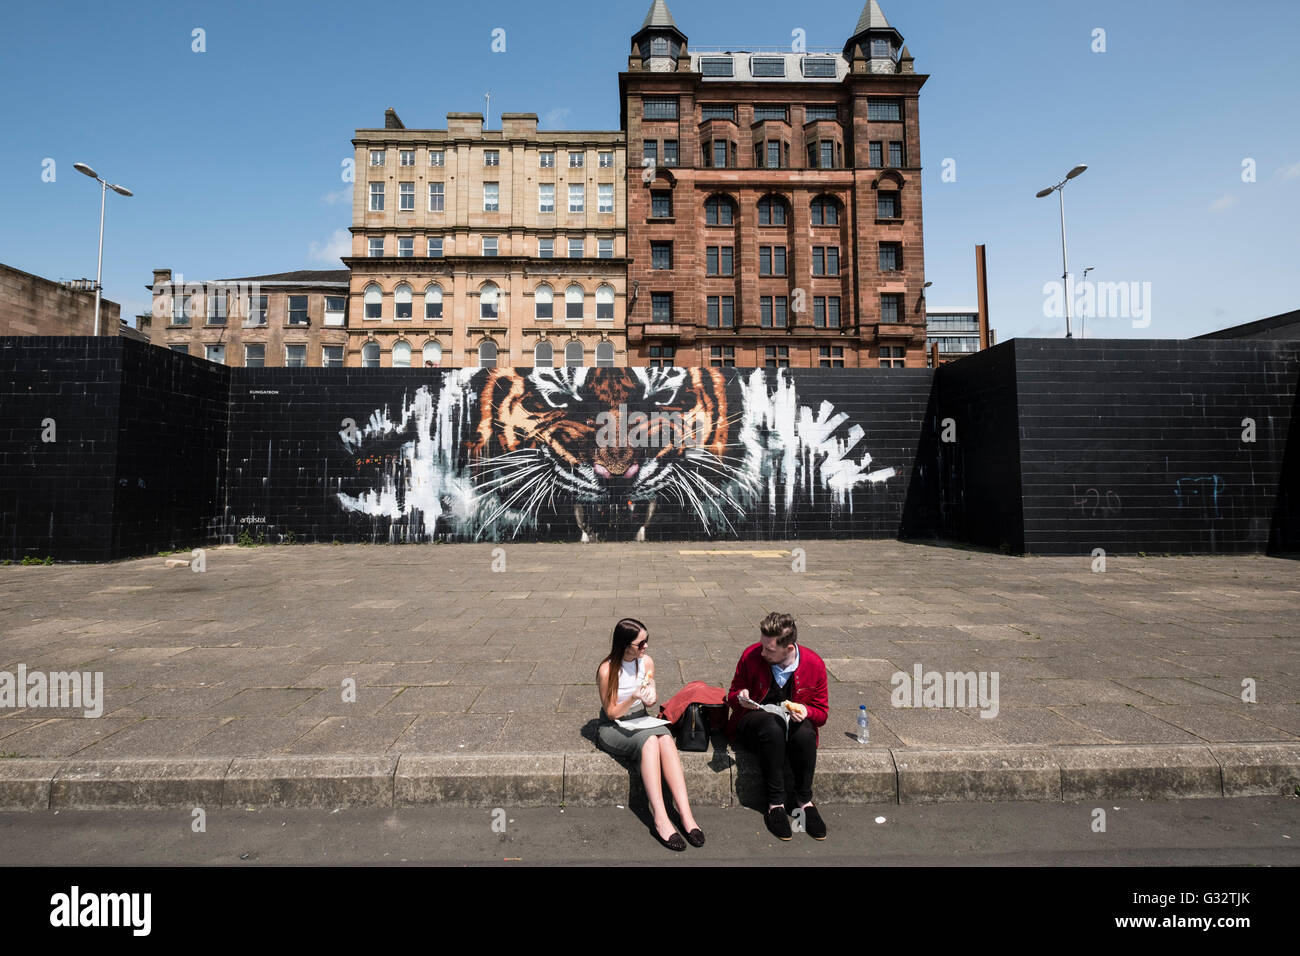 Tiger-street-Art Wandbild an Wand im zentralen Glasgow, Schottland, Vereinigtes Königreich Stockfoto